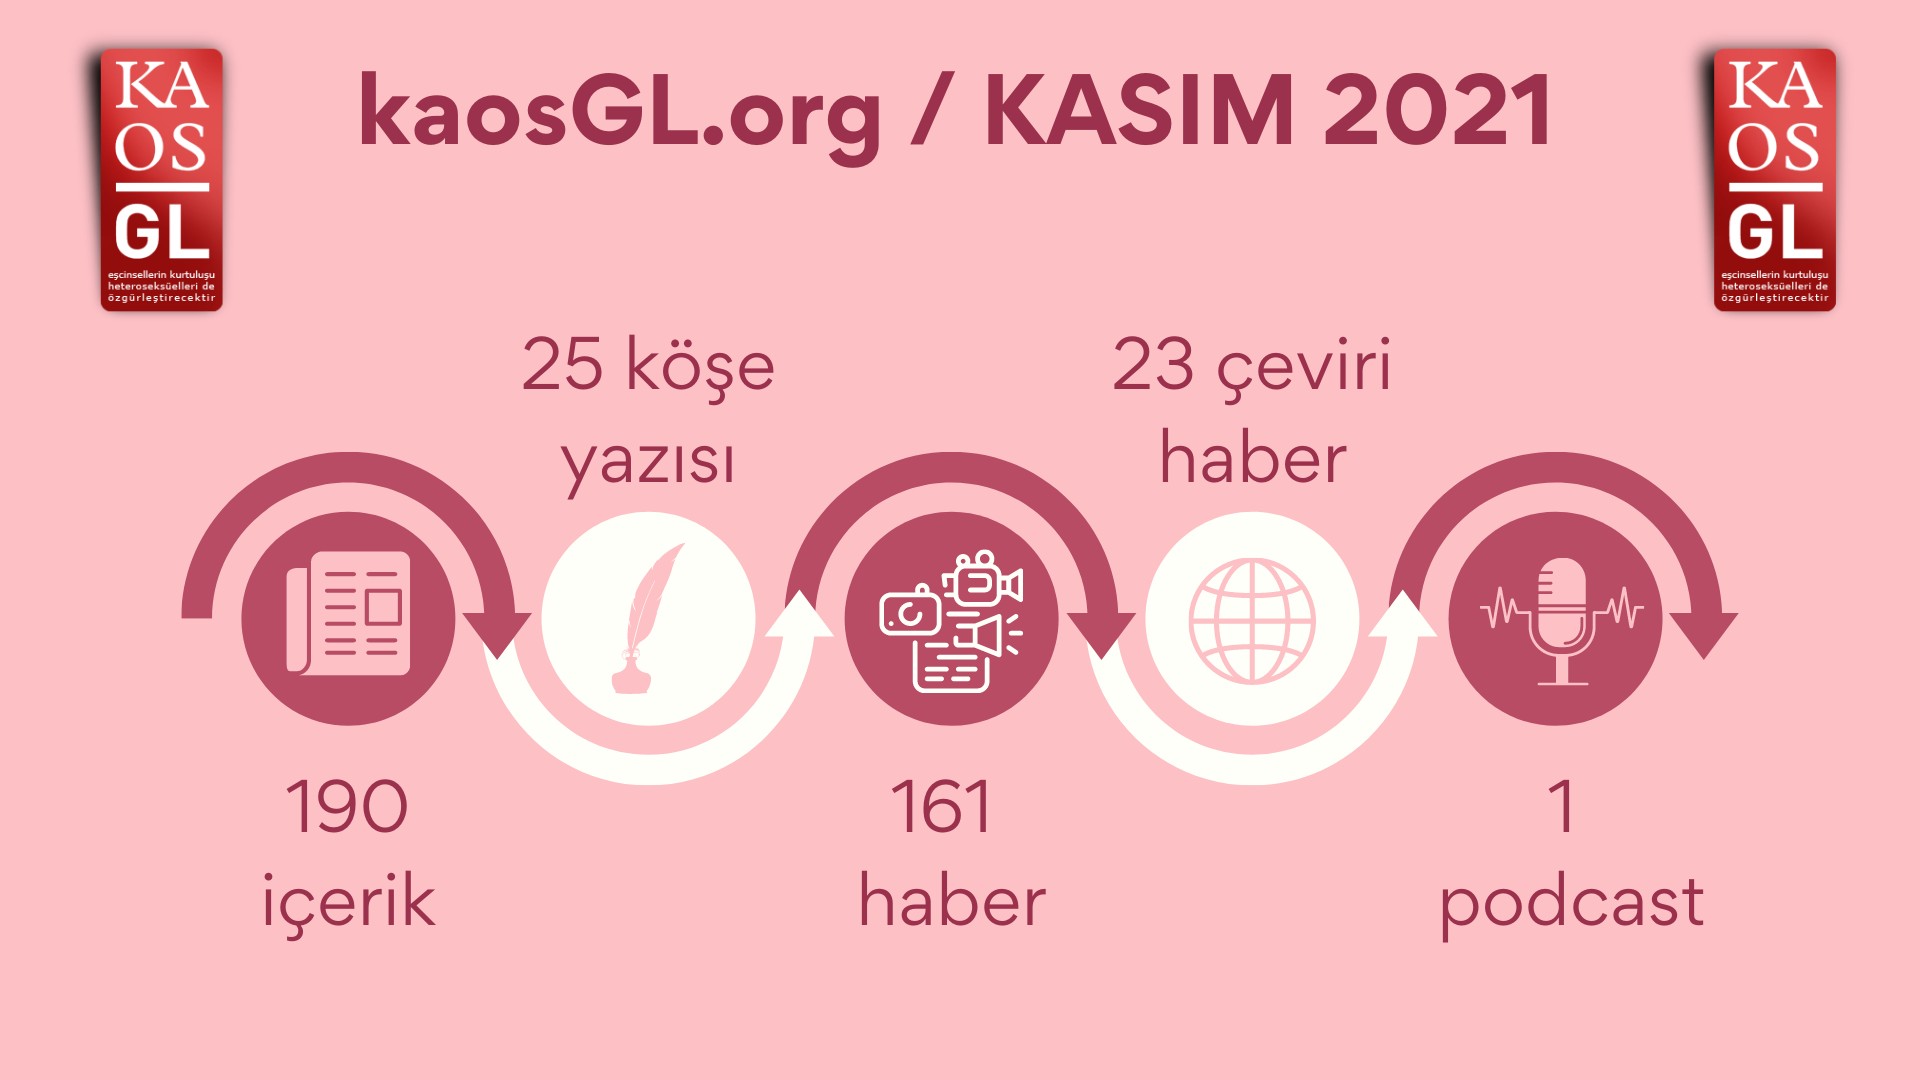 KaosGL.org, Kasım 2021’de ne yaptı? Kaos GL - LGBTİ+ Haber Portalı